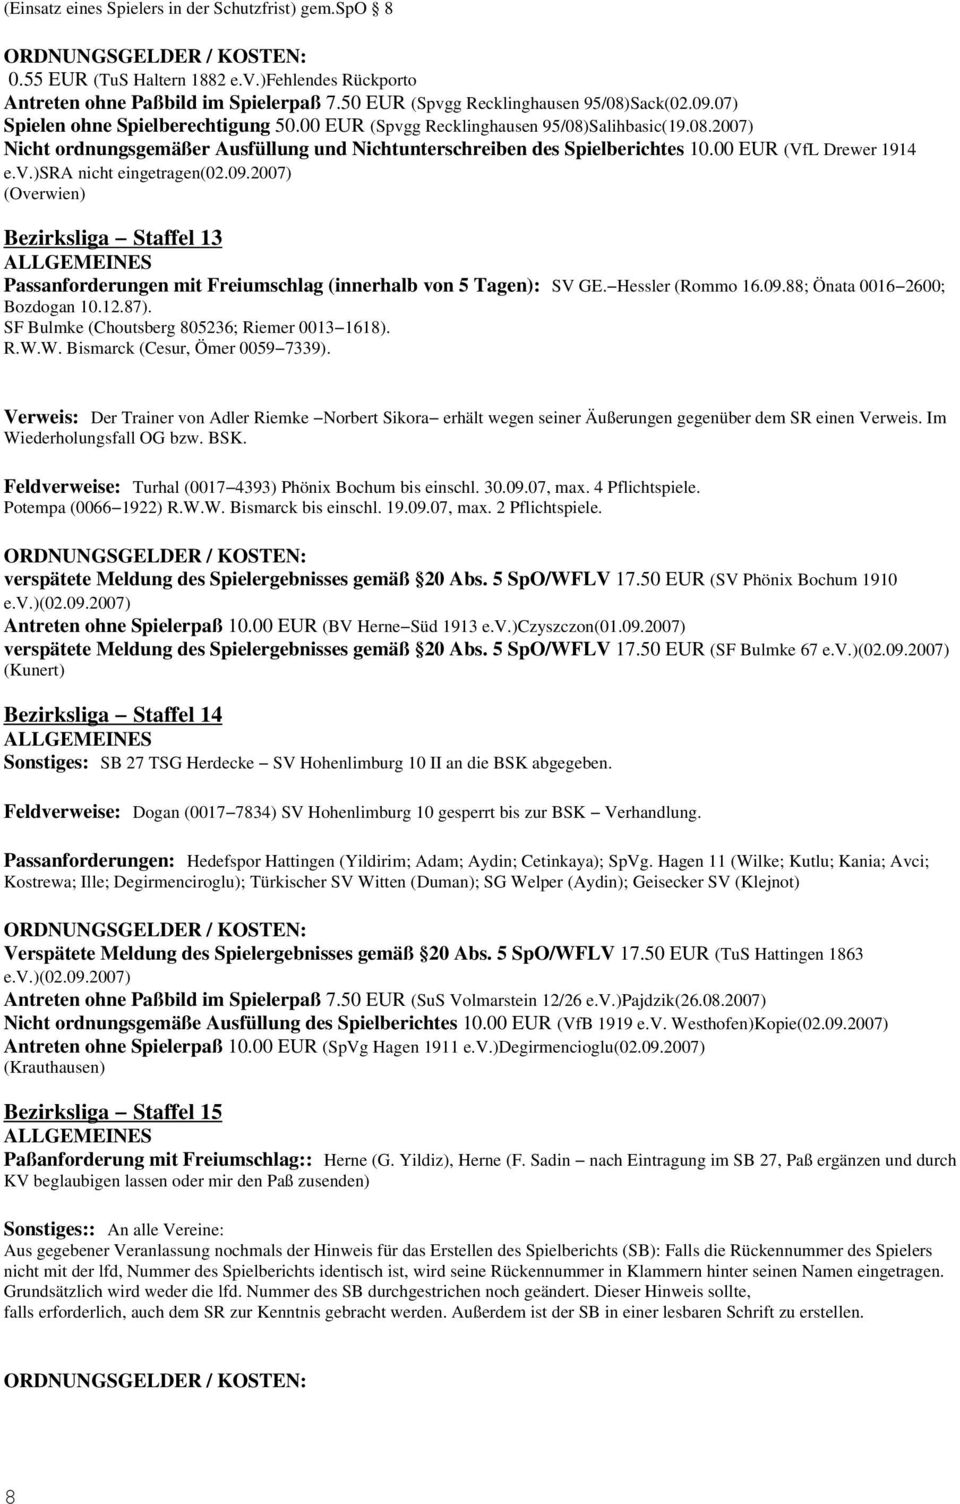 00 EUR (VfL Drewer 1914 e.v.)sra nicht eingetragen(02.09.2007) (Overwien) Bezirksliga Staffel 13 Passanforderungen mit Freiumschlag (innerhalb von 5 Tagen): SV GE. Hessler (Rommo 16.09.88; Önata 0016 2600; Bozdogan 10.